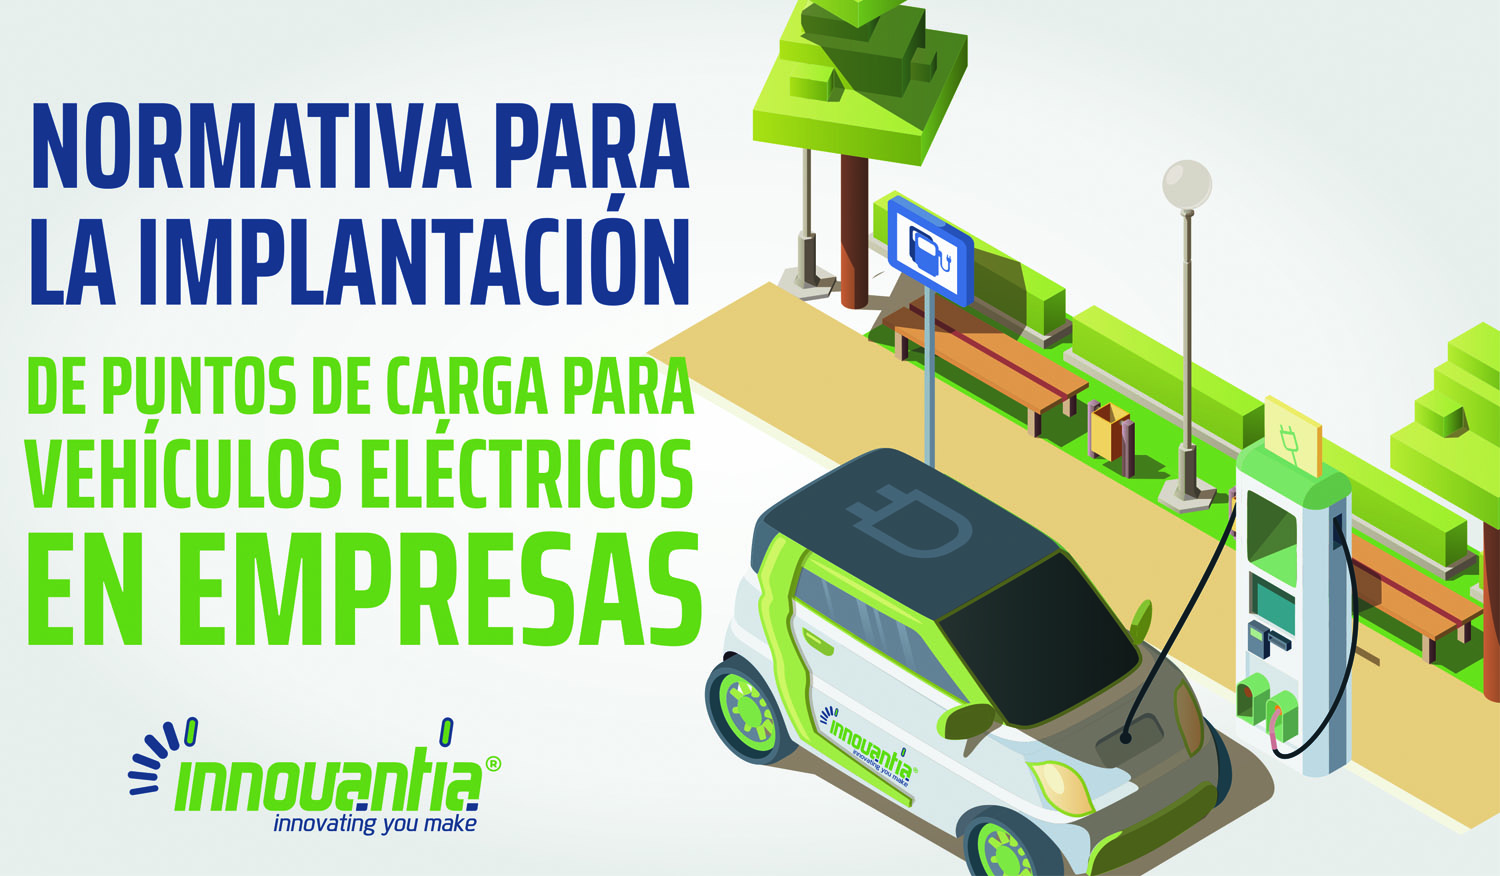 PUNTOS CARGA COCHE ELECTRICO - Normativa para la implantación de puntos de carga para vehículos eléctricos en empresas